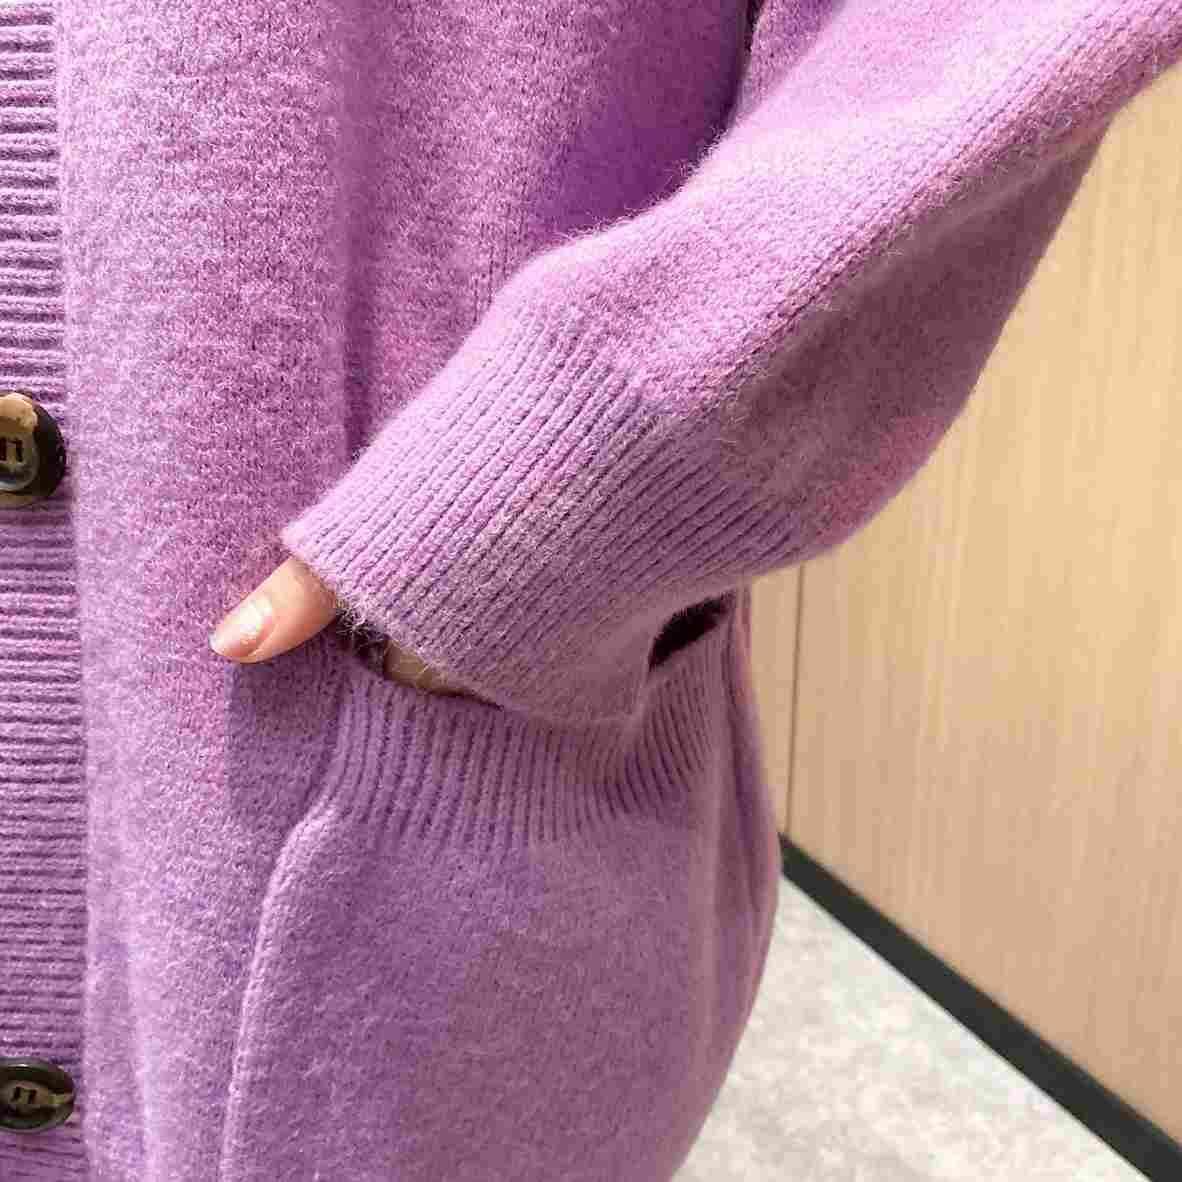 BTS Jimin Inspired Purple Long Sweater